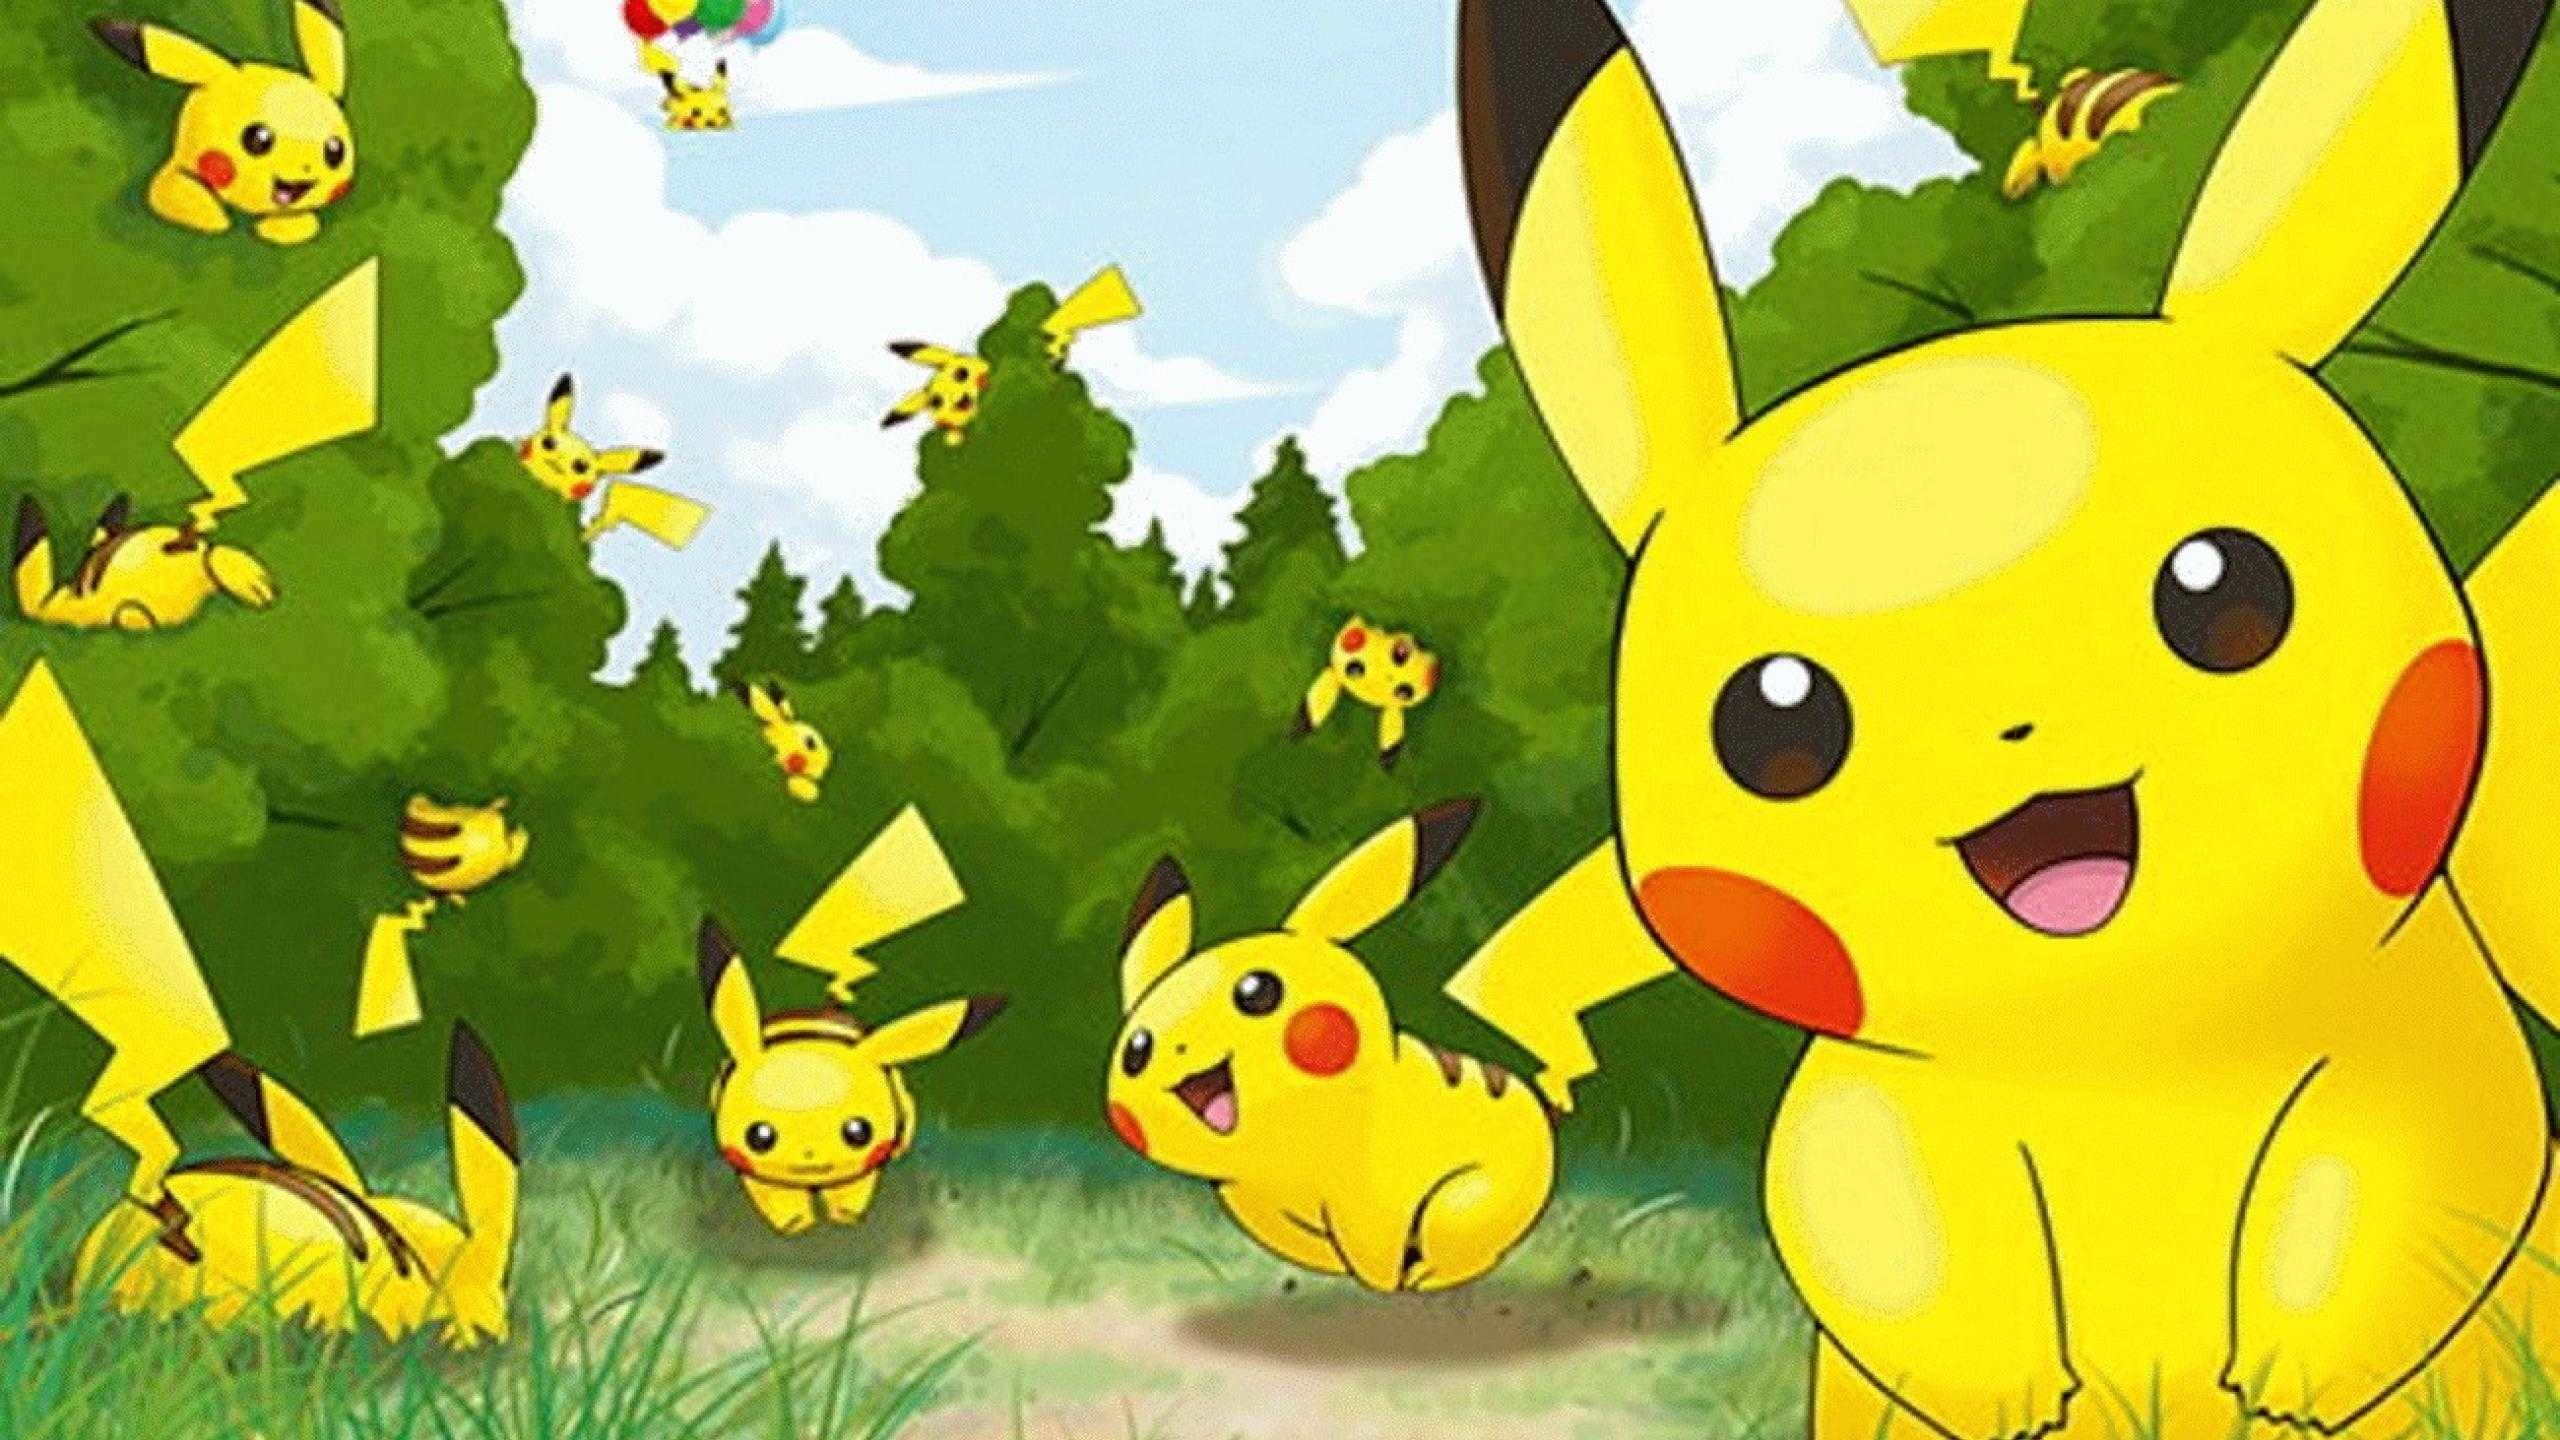 2560x1440 pokemon wallpaper hd pikachu